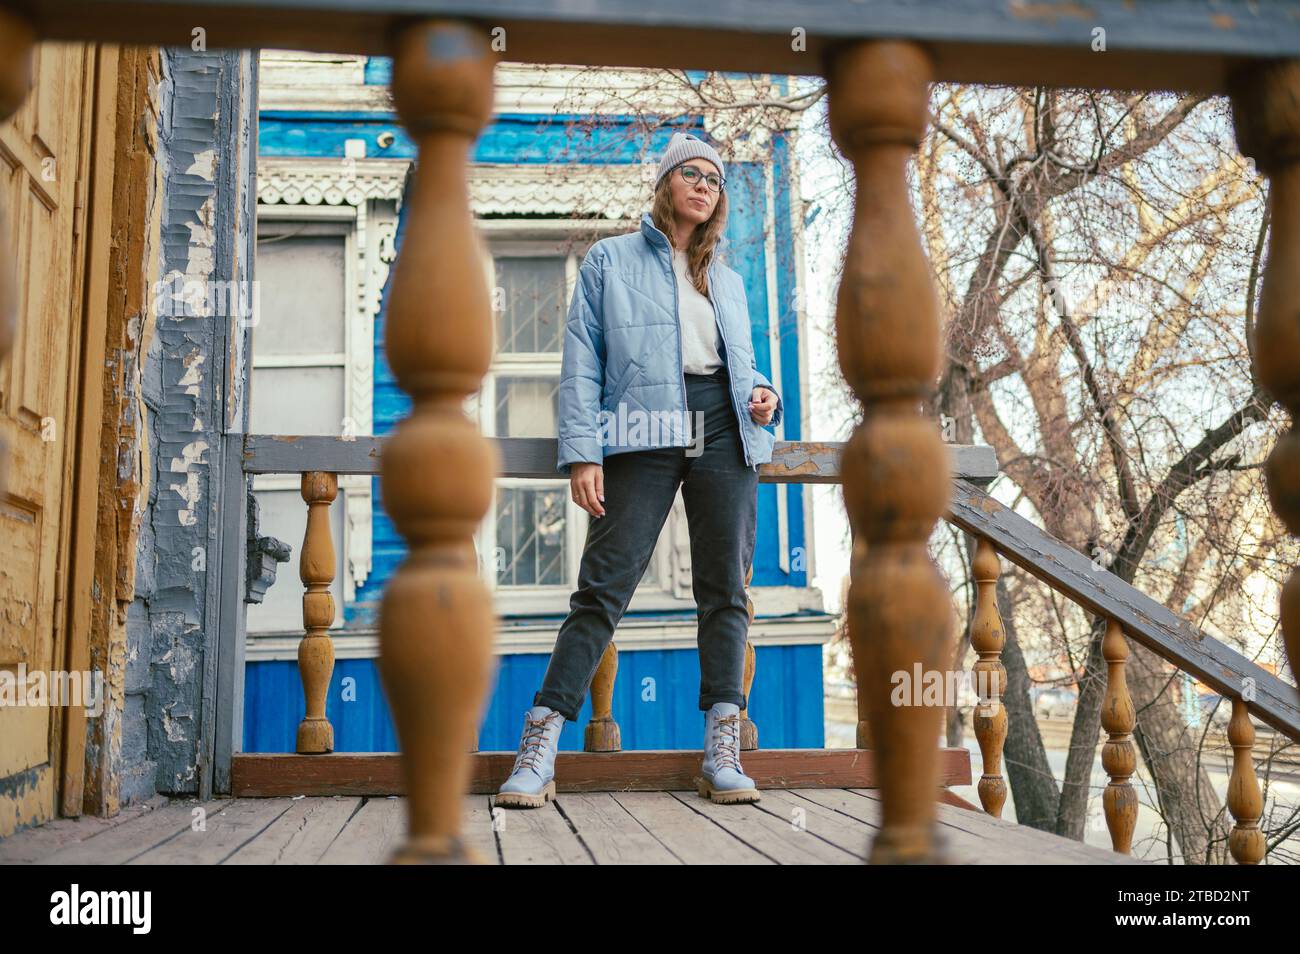 Porträt einer stilvollen Frau in blauer Jacke. Frühlingsporträt im Freien. Stockfoto